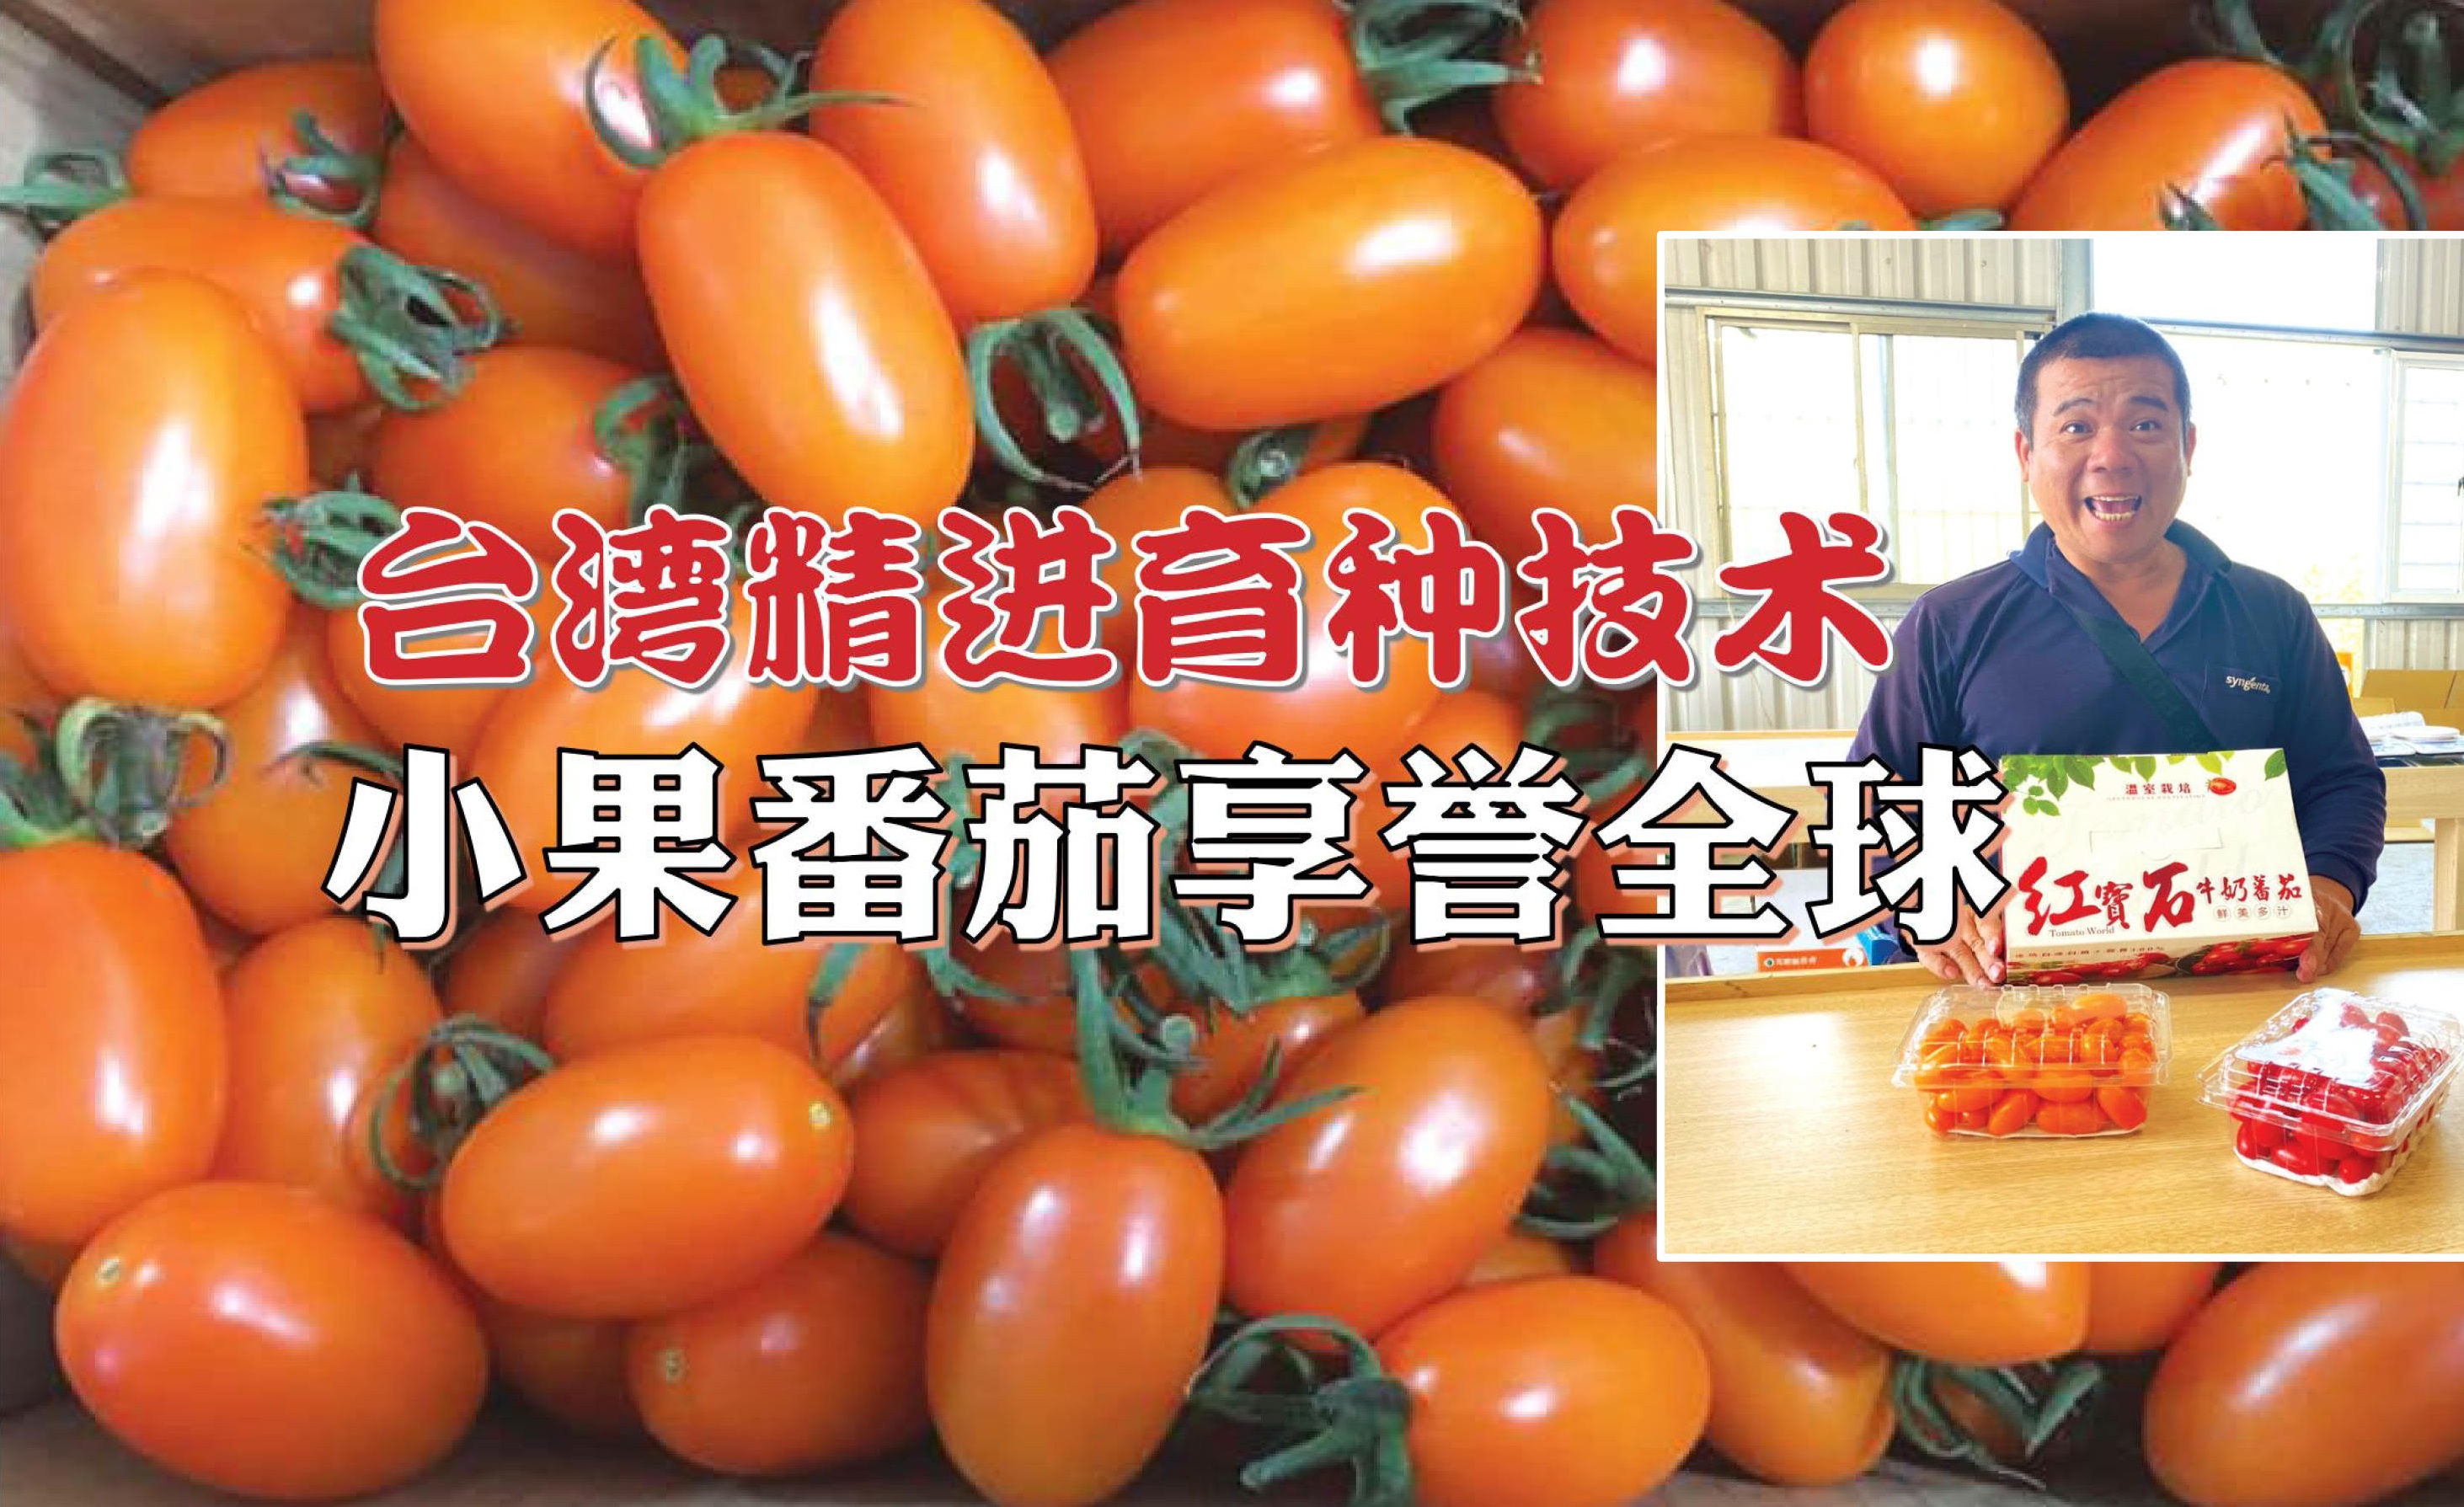 台湾精进育种技术 小果番茄享誉全球 - 农牧世界